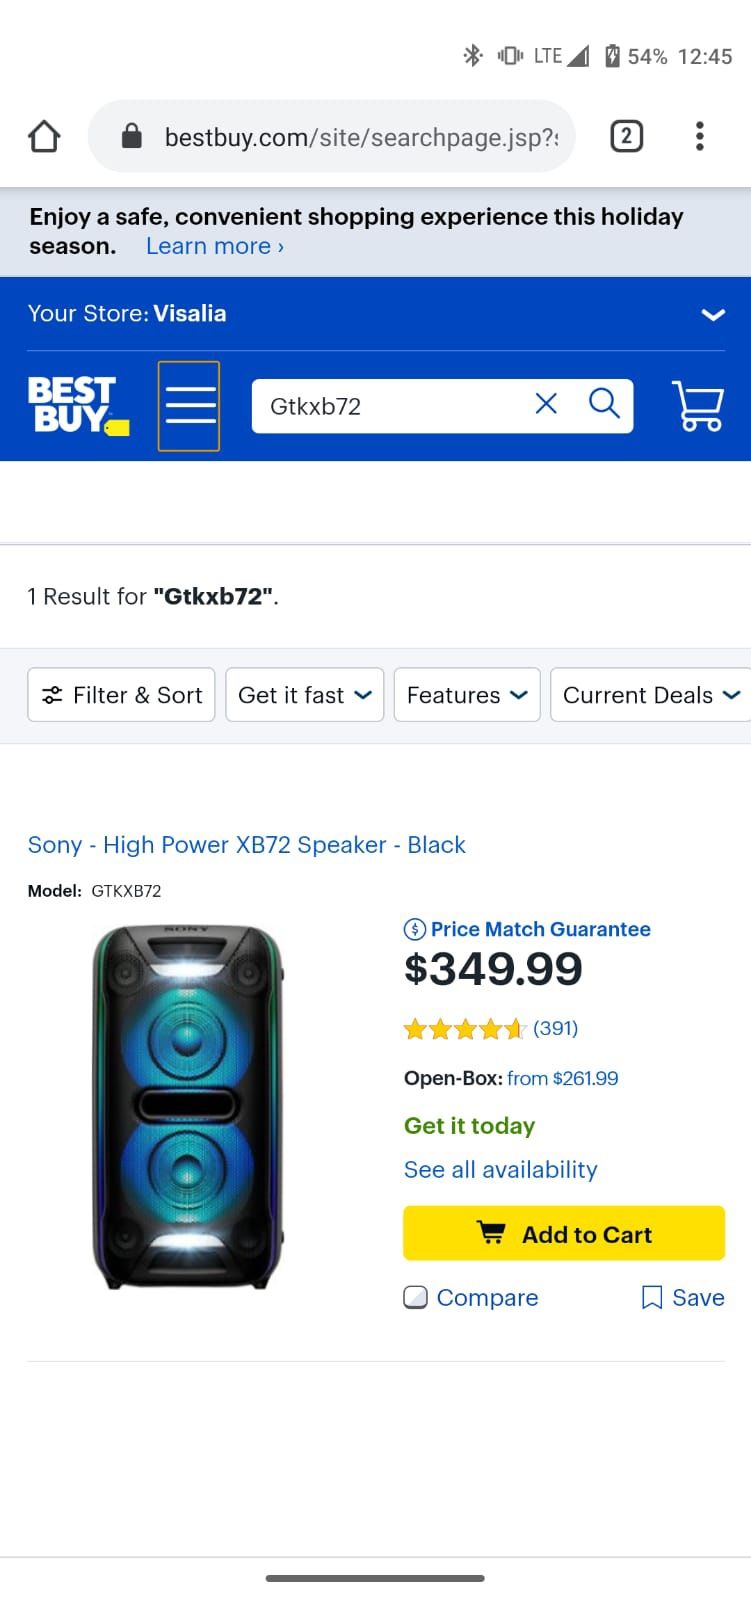 Sony high power XB72 Speaker Black